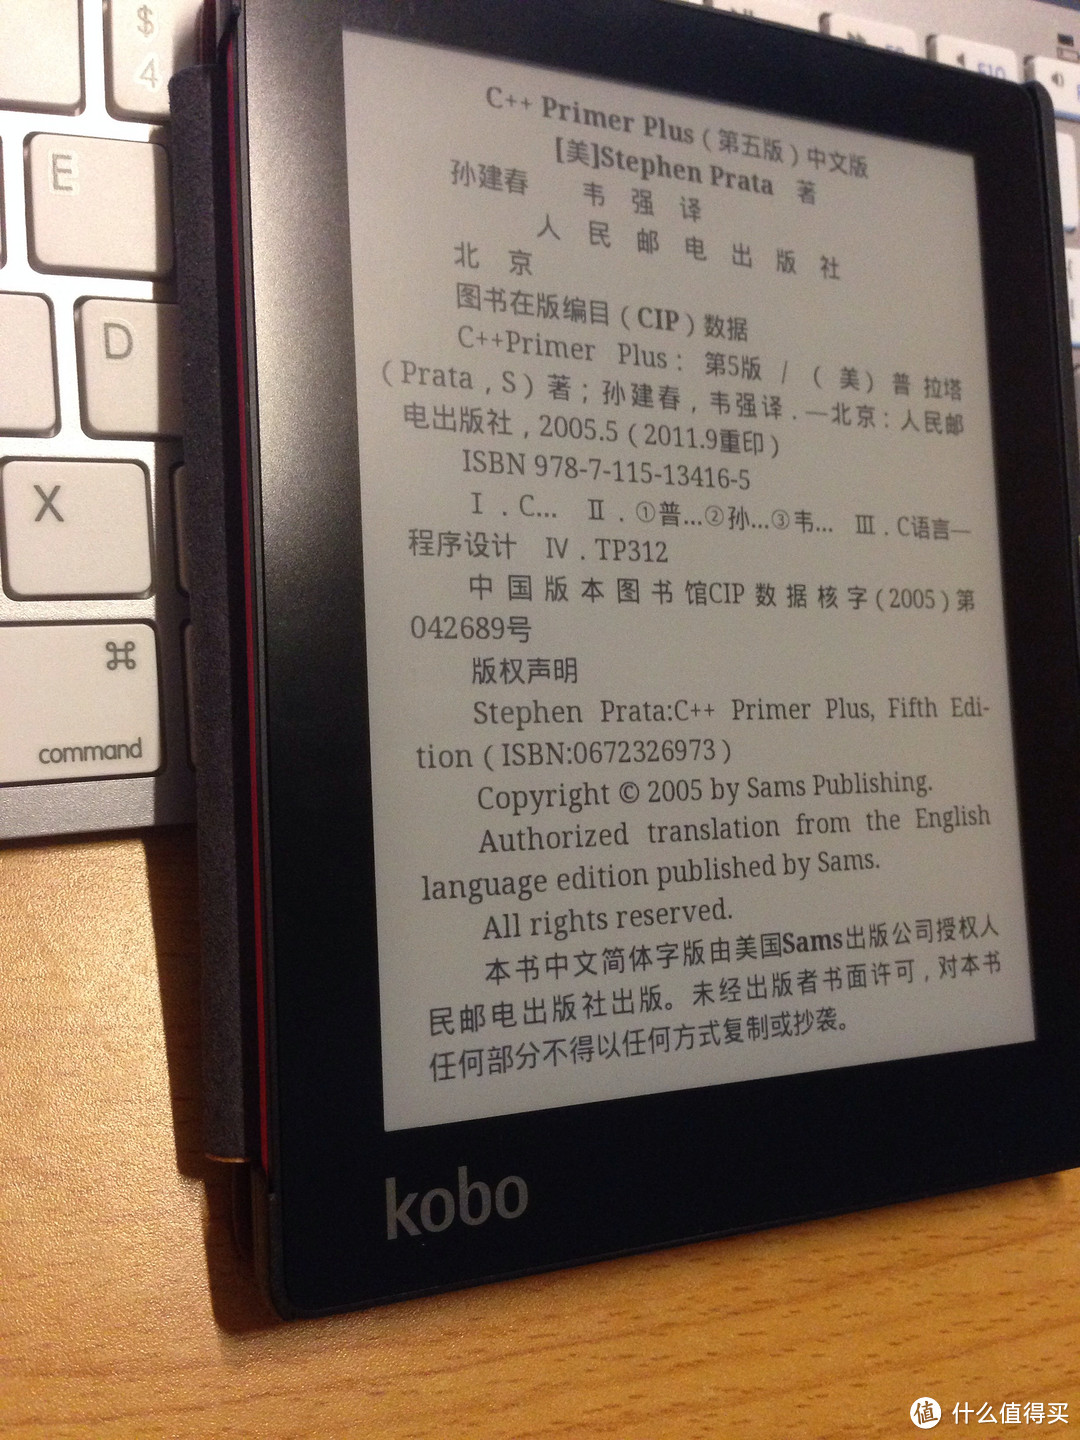 小众产品中的小众品牌中的小众型号：KOBO AURA 电子书阅读器